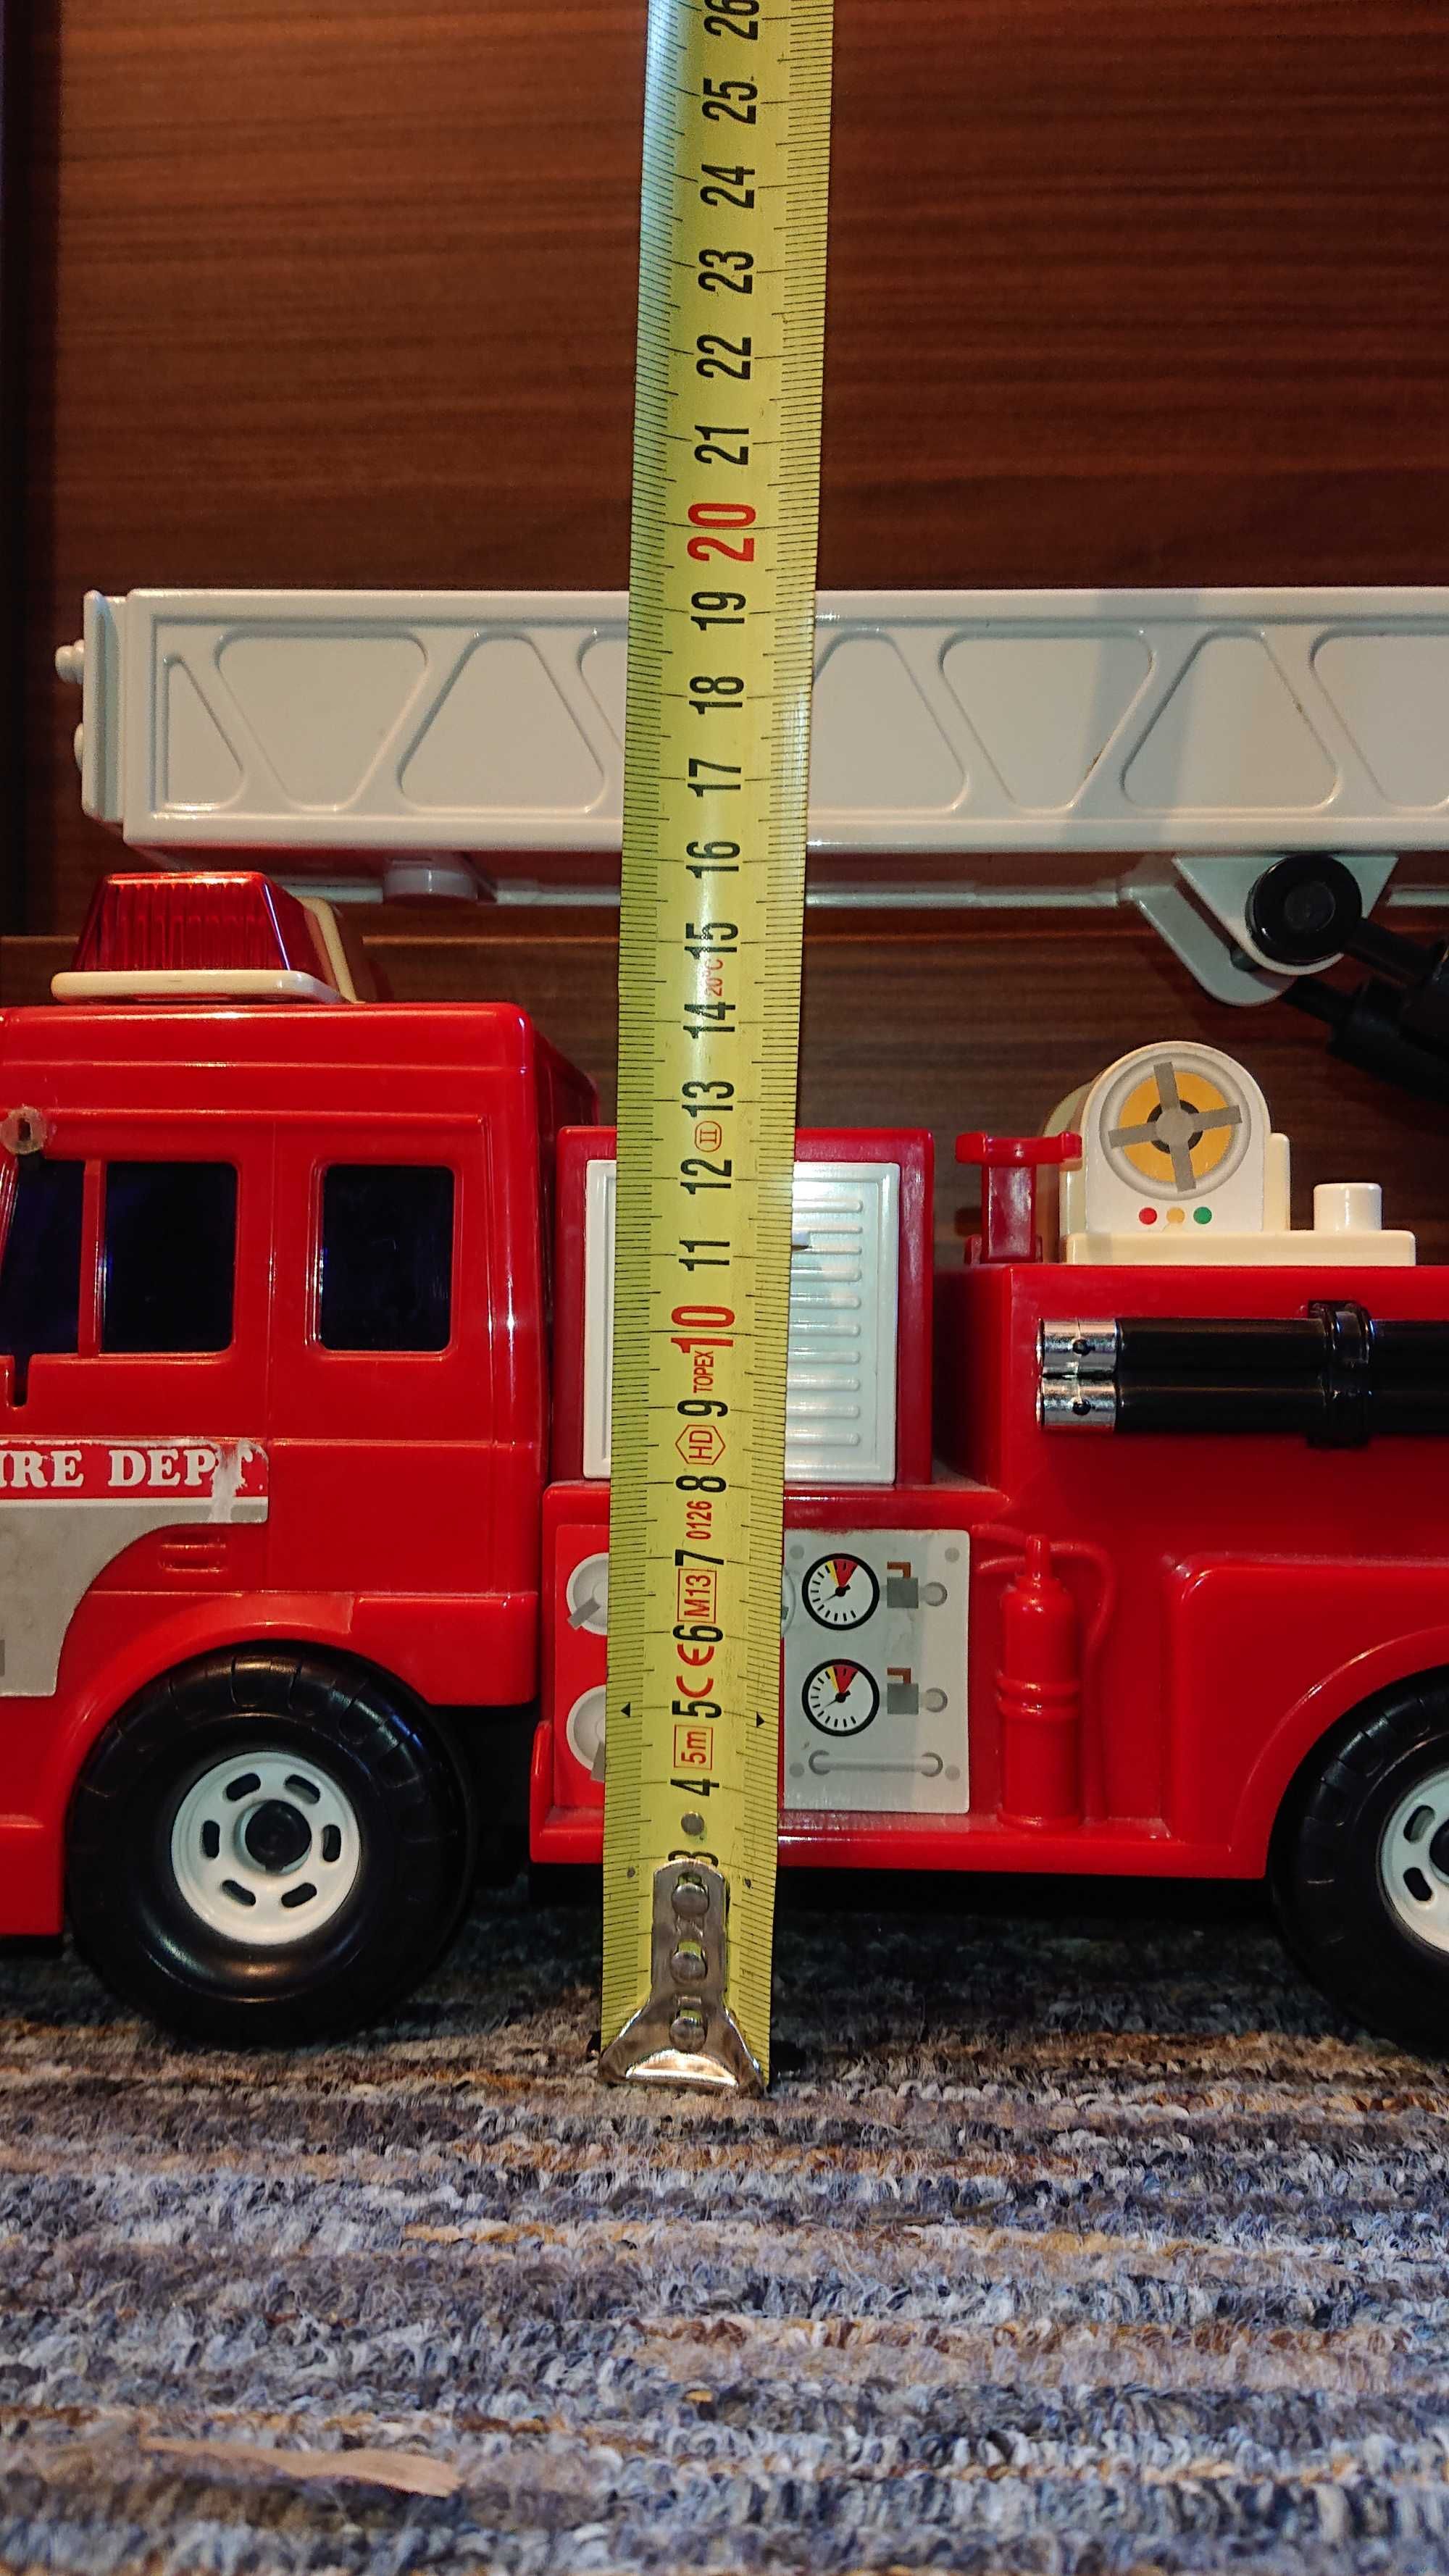 Duża straż pożarna / wysuwana drabina / Daesung Toys / wóz strażacki